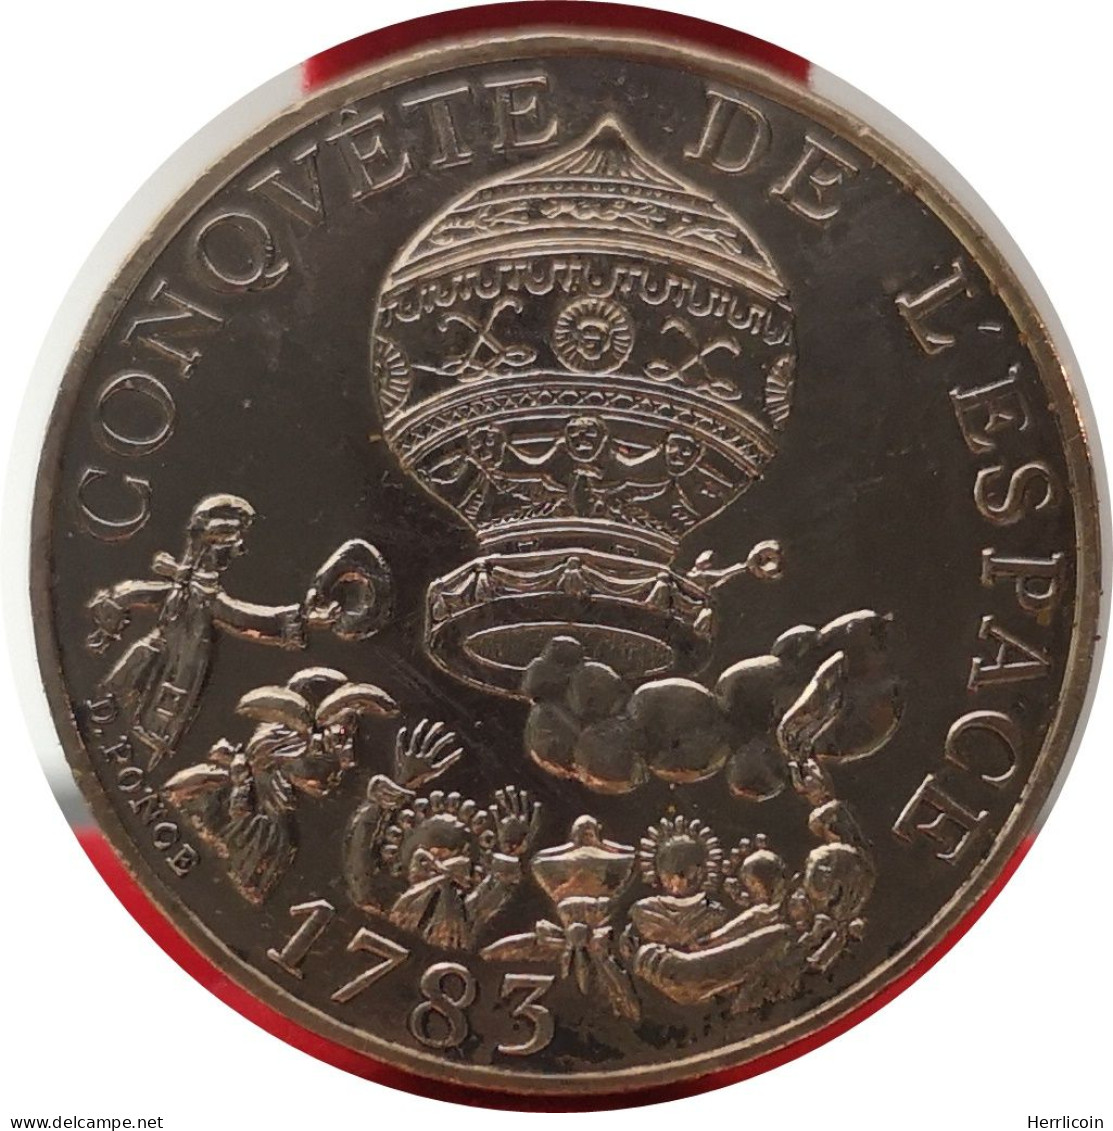 Monnaie France - 1983 Tranche A - 10 Francs Conquête De L'Espace - Gedenkmünzen